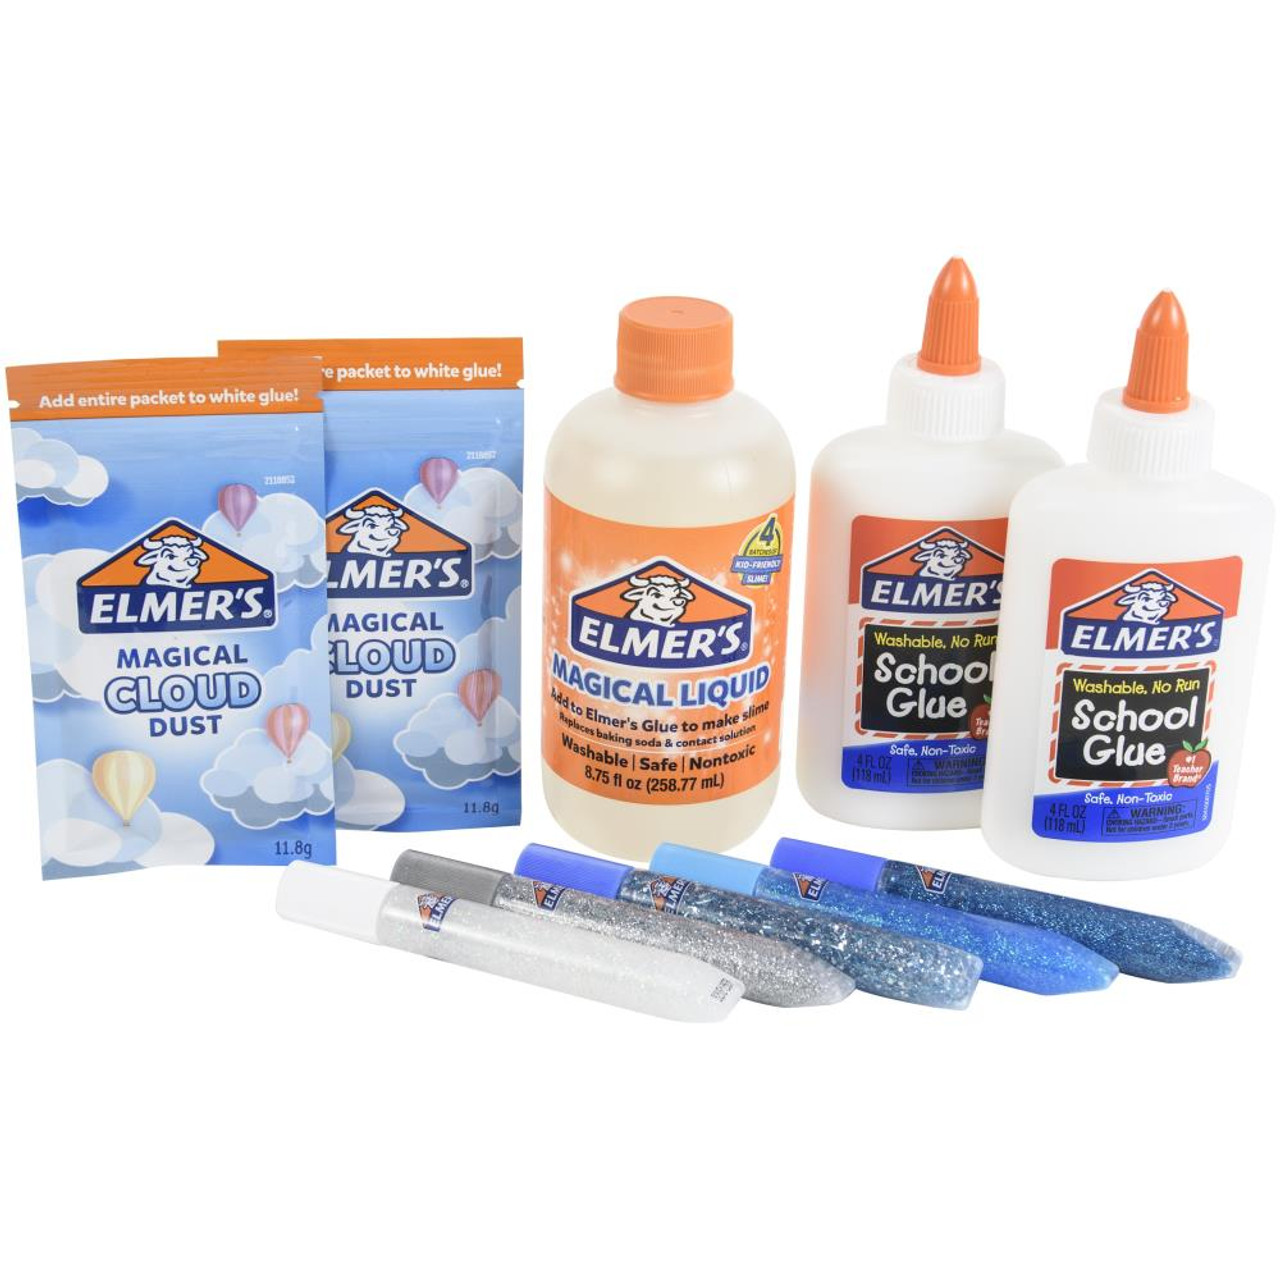 Elmers Glue Slime Magical Liquid Activator Solution 8.75 Fl. Oz. Bottle  Homemade Slime, Paper Crafts, Art Work, School, Kids Crafts 